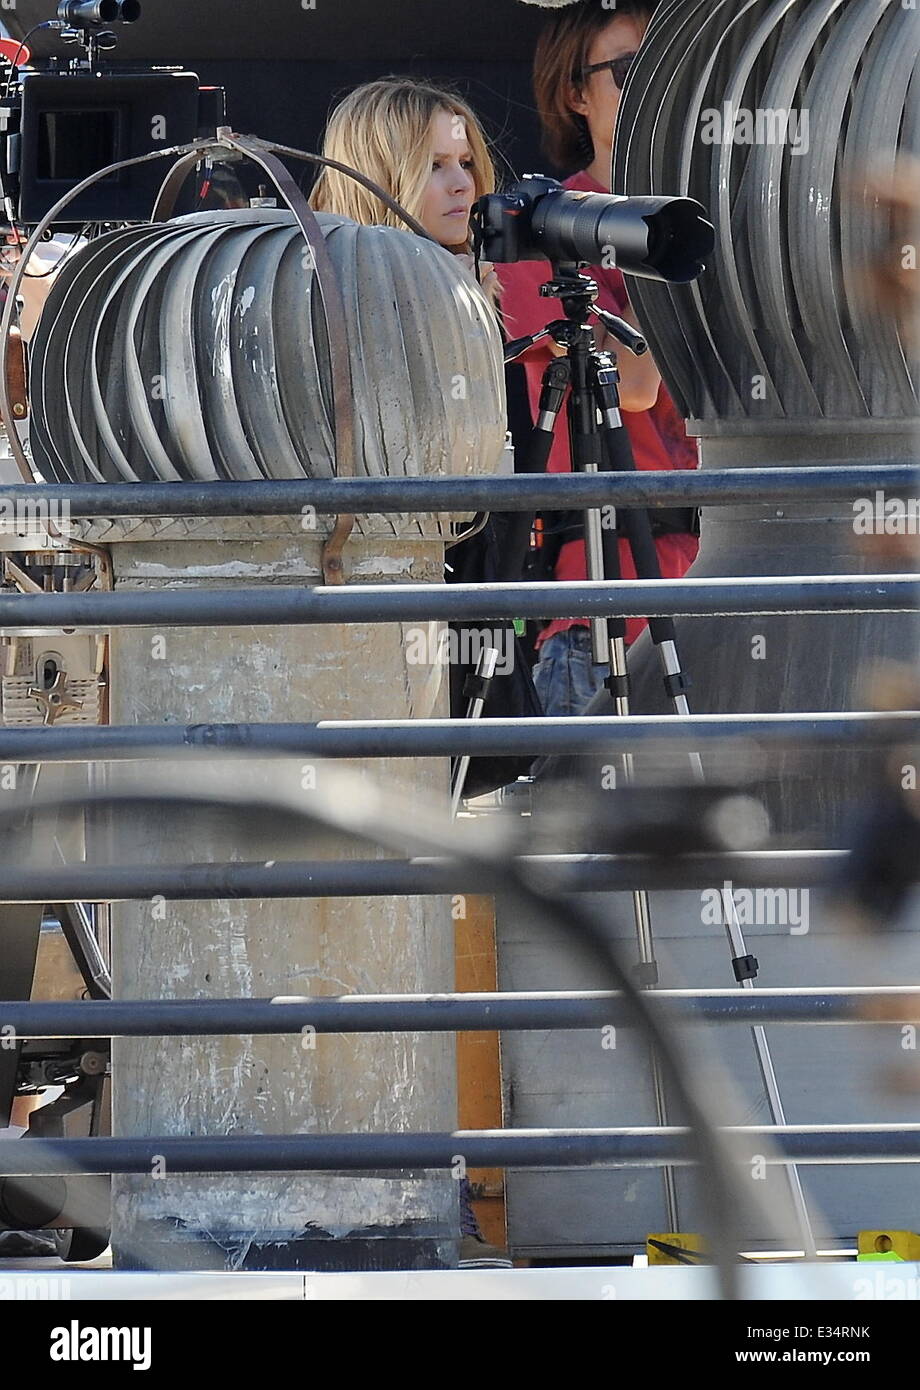 Schauspielerin Kristen Bell spielt Paparazzi für einen Tag, da sie jemand für eine Szene auf dem neuesten kommenden Spielfilm von "Veronica Mars" in der Innenstadt von Los Angeles ausspioniert.  Mitwirkende: Kristen Bell wo: Los Angeles, California, Vereinigte Staaten von Amerika bei: 19. Juni 2013 Stockfoto